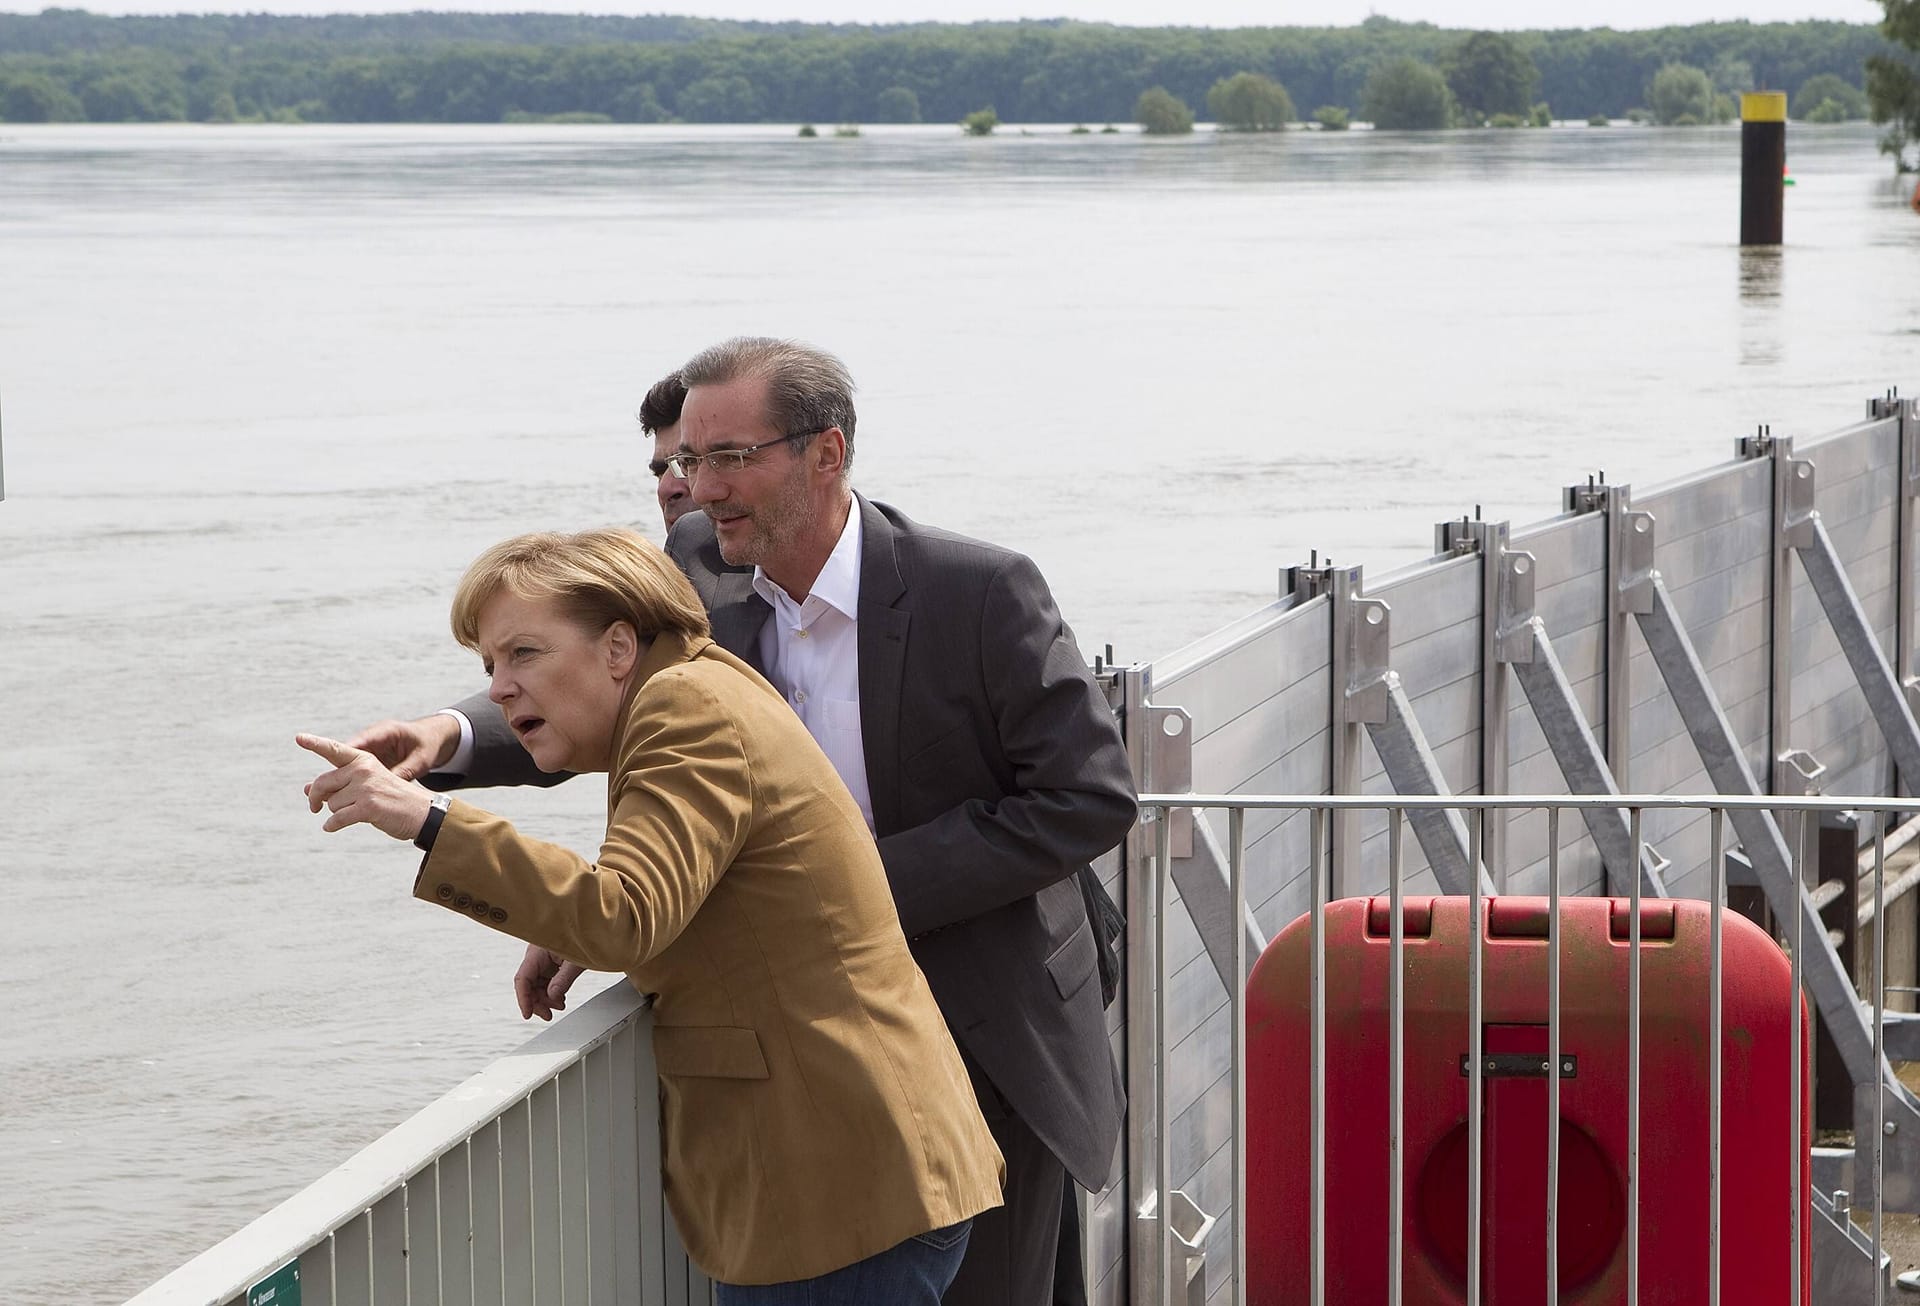 Die damalige Bundeskanzlerin Angela Merkel informiert sich im Jahr 2010 über die Situation des Oderhochwassers in der Region Frankfurt (Oder).